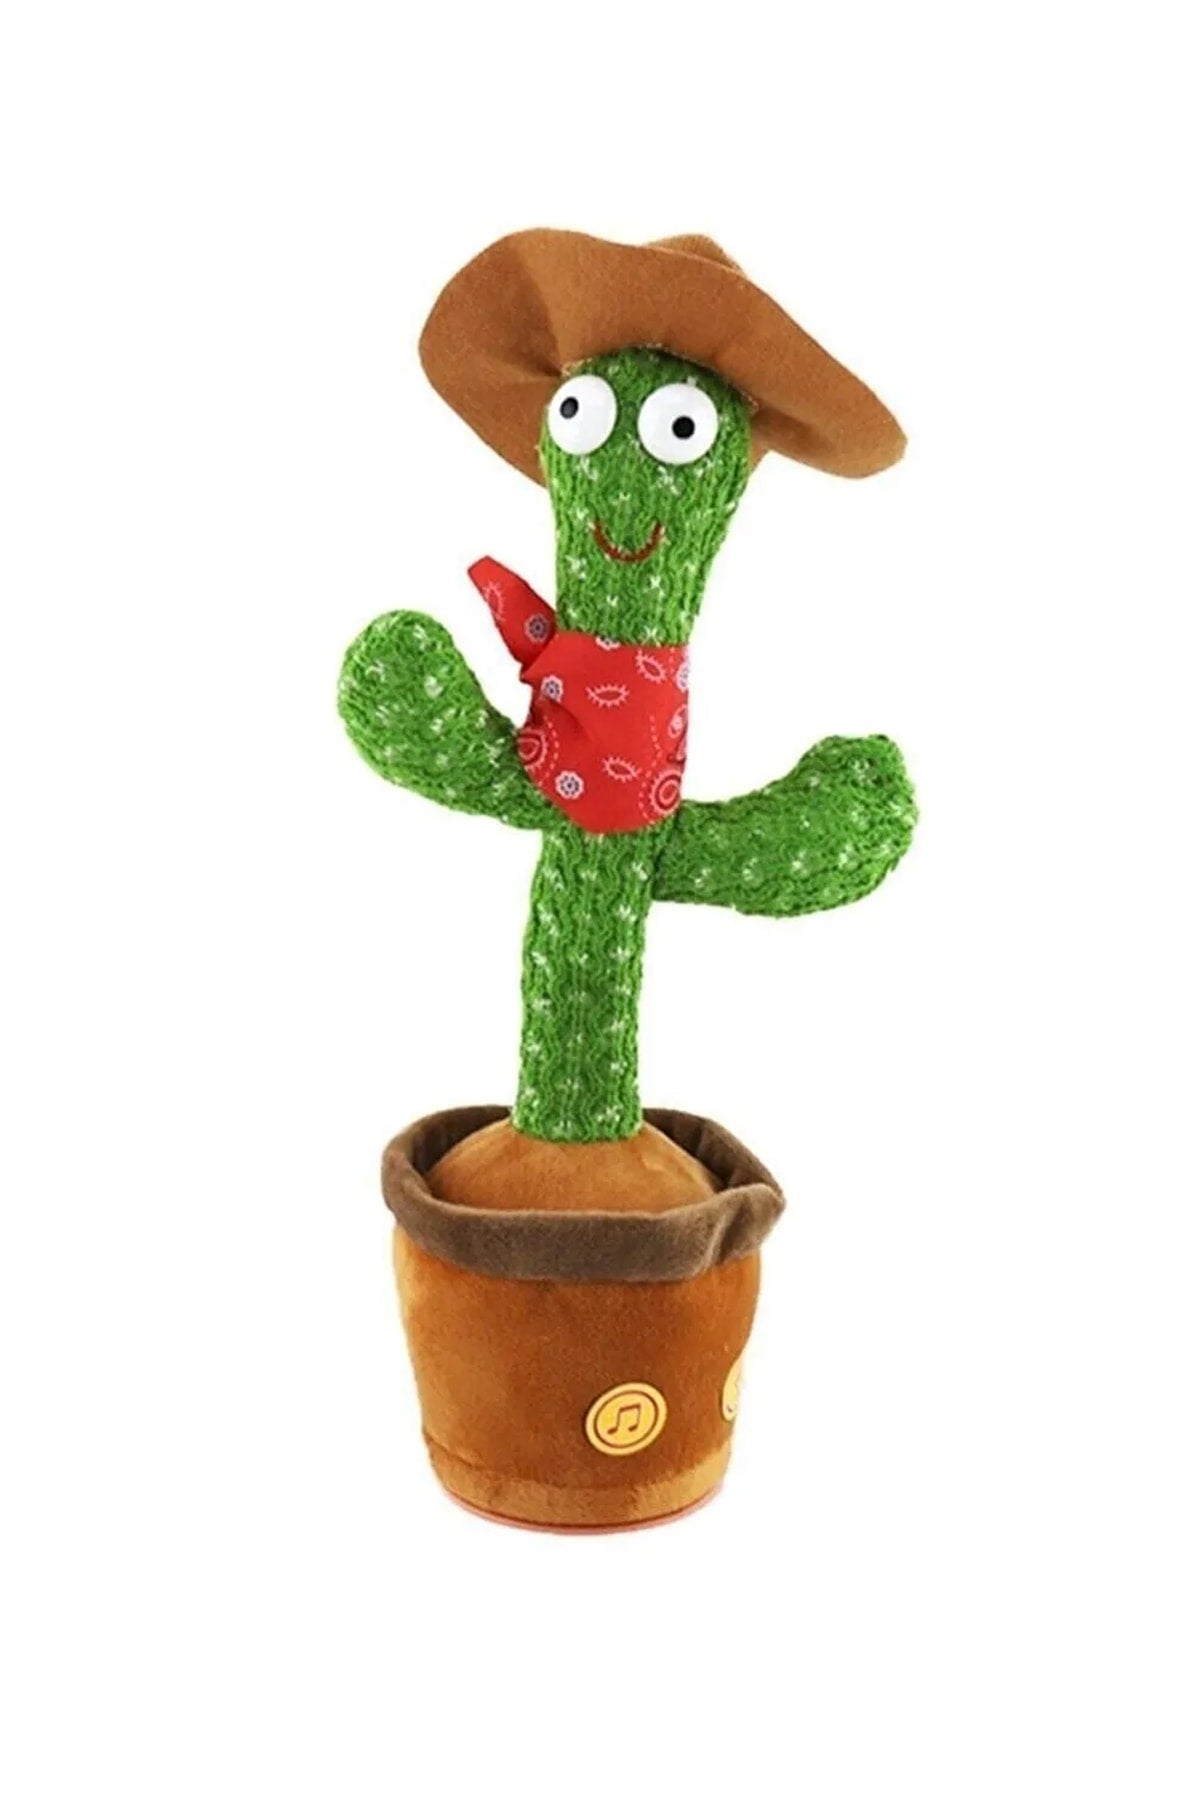 Playing Talking Imitator Lighted Cactus Toy Talking Talking Cactus